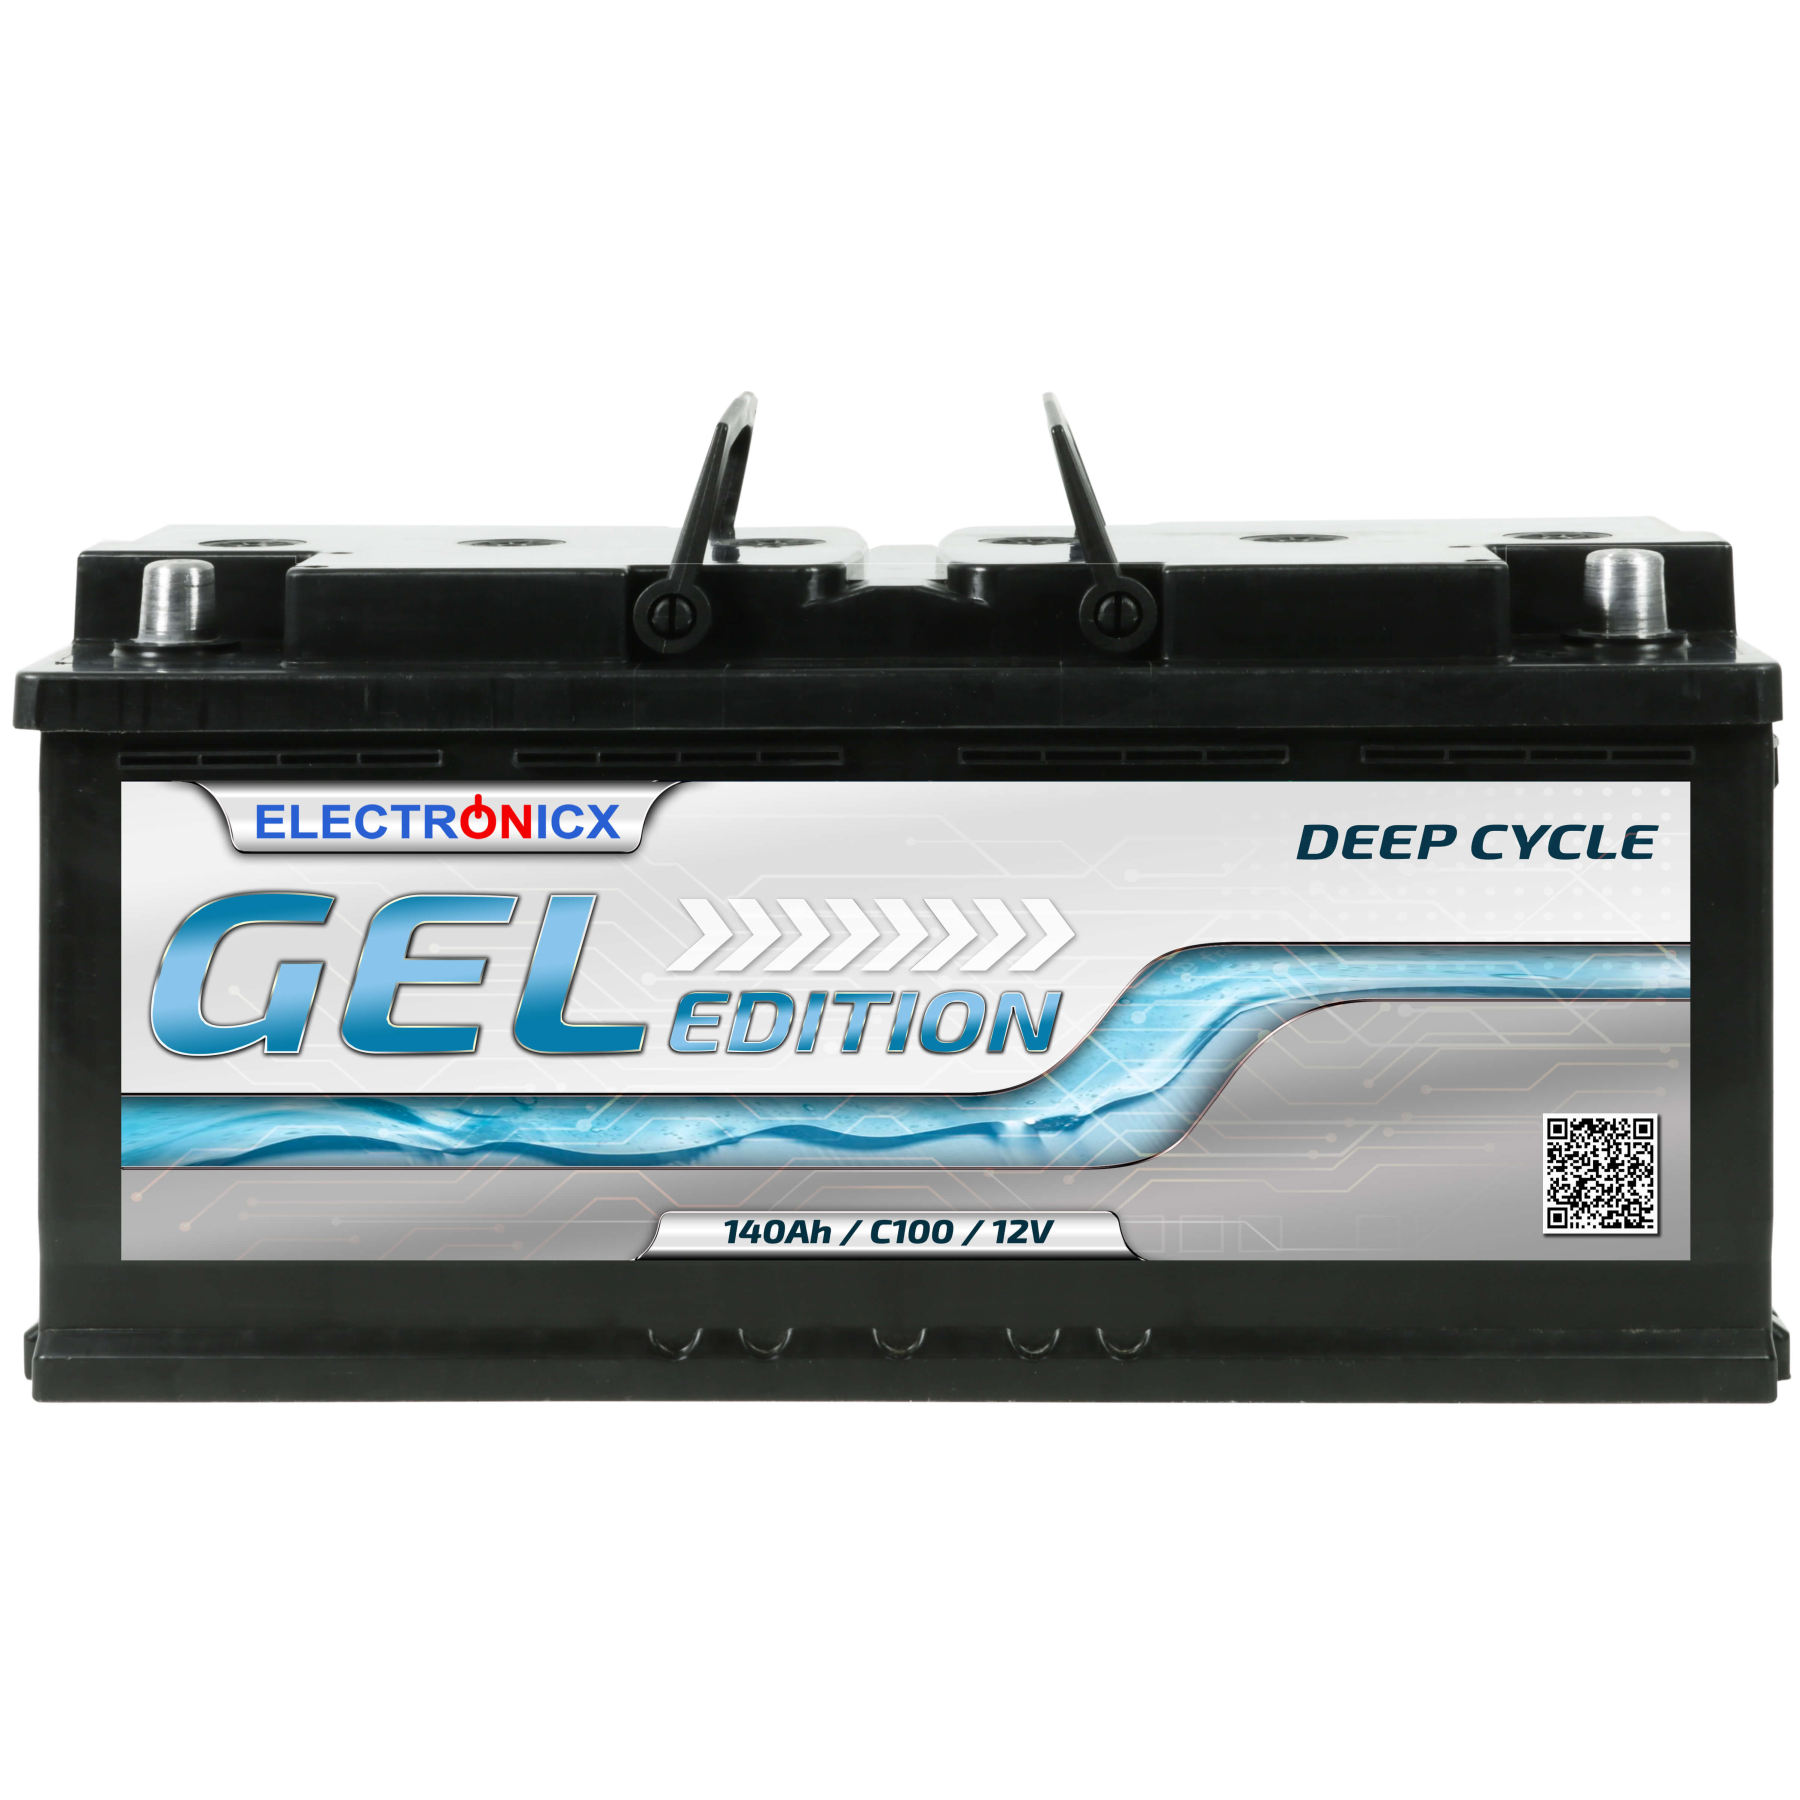 Edition "Gel" Gel-Batterie 140 AH 12V, 189,99 €